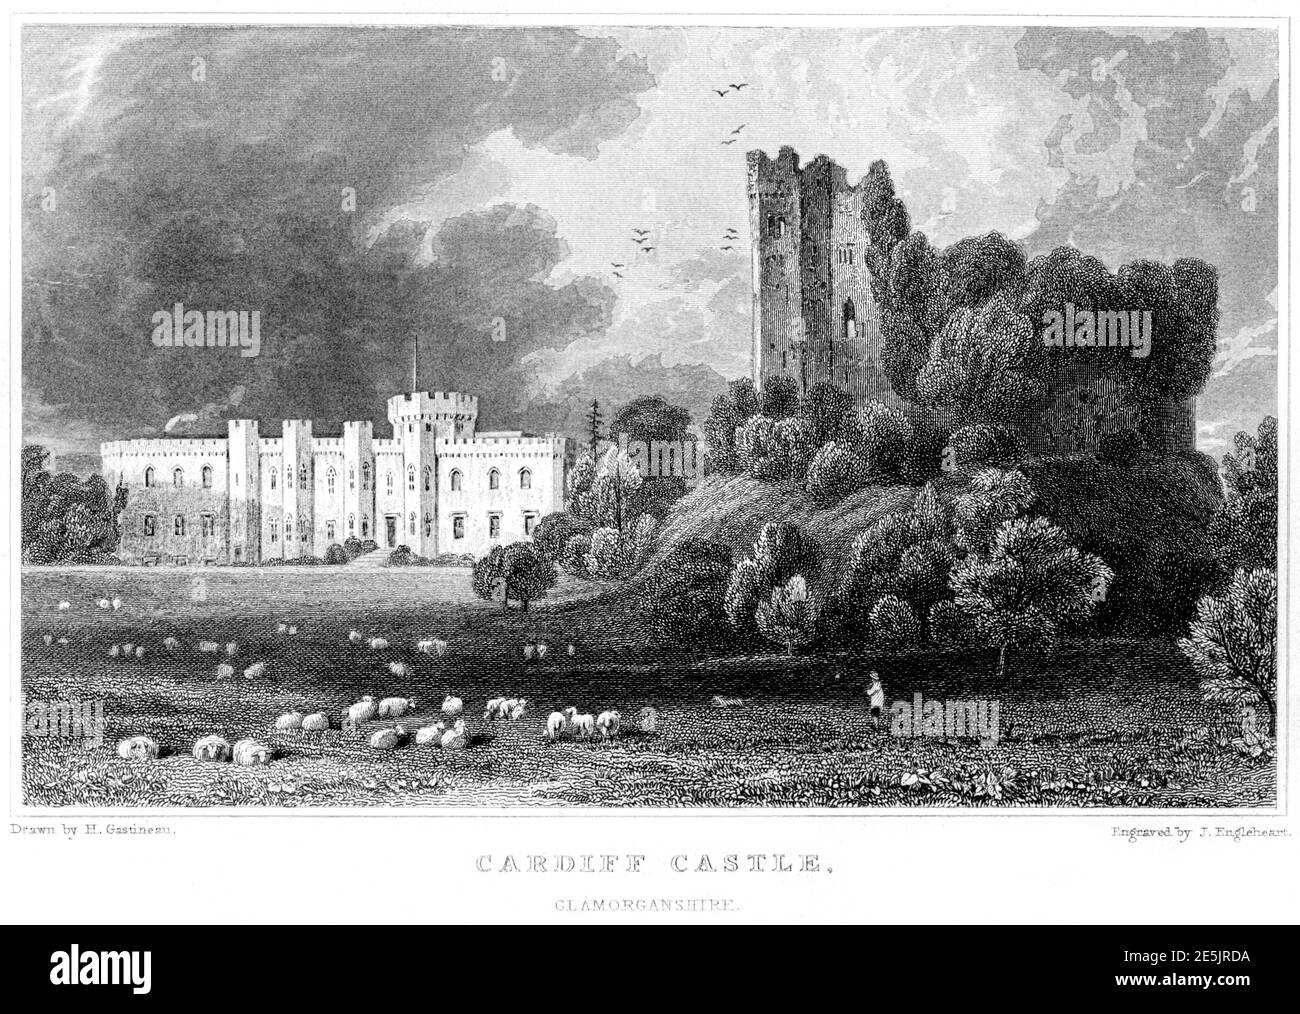 Incisione del Castello di Cardiff, Glamorganshire ha fatto la scansione ad alta risoluzione di un libro pubblicato nel 1854. Creduto esente da copyright. Foto Stock